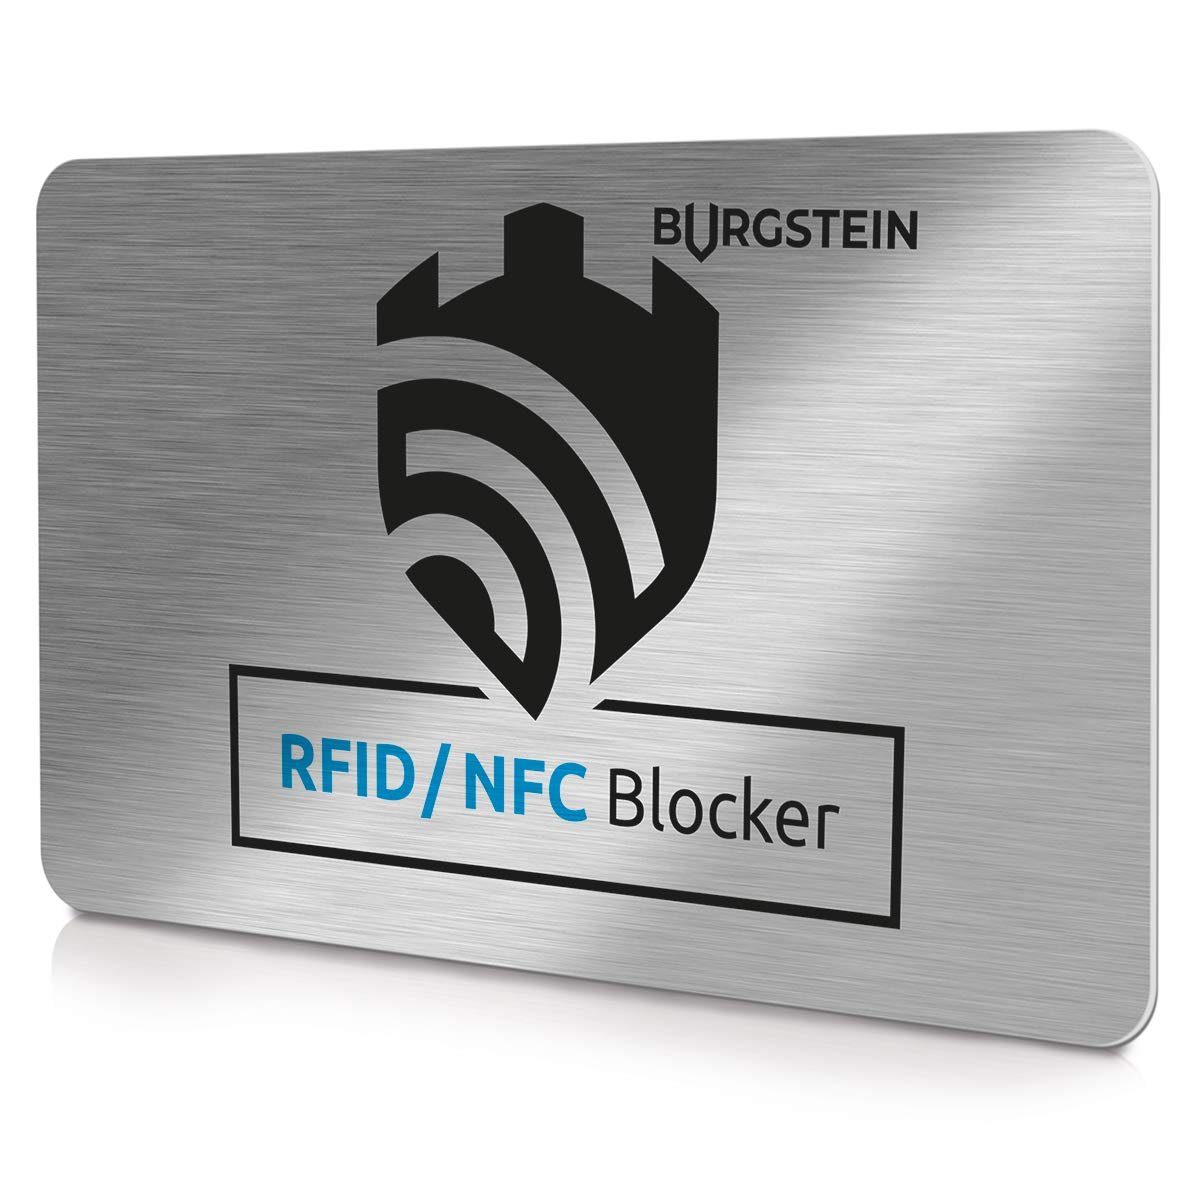 RFID Blocker Schutz vor Betrug Kreditkarte Bankkarte